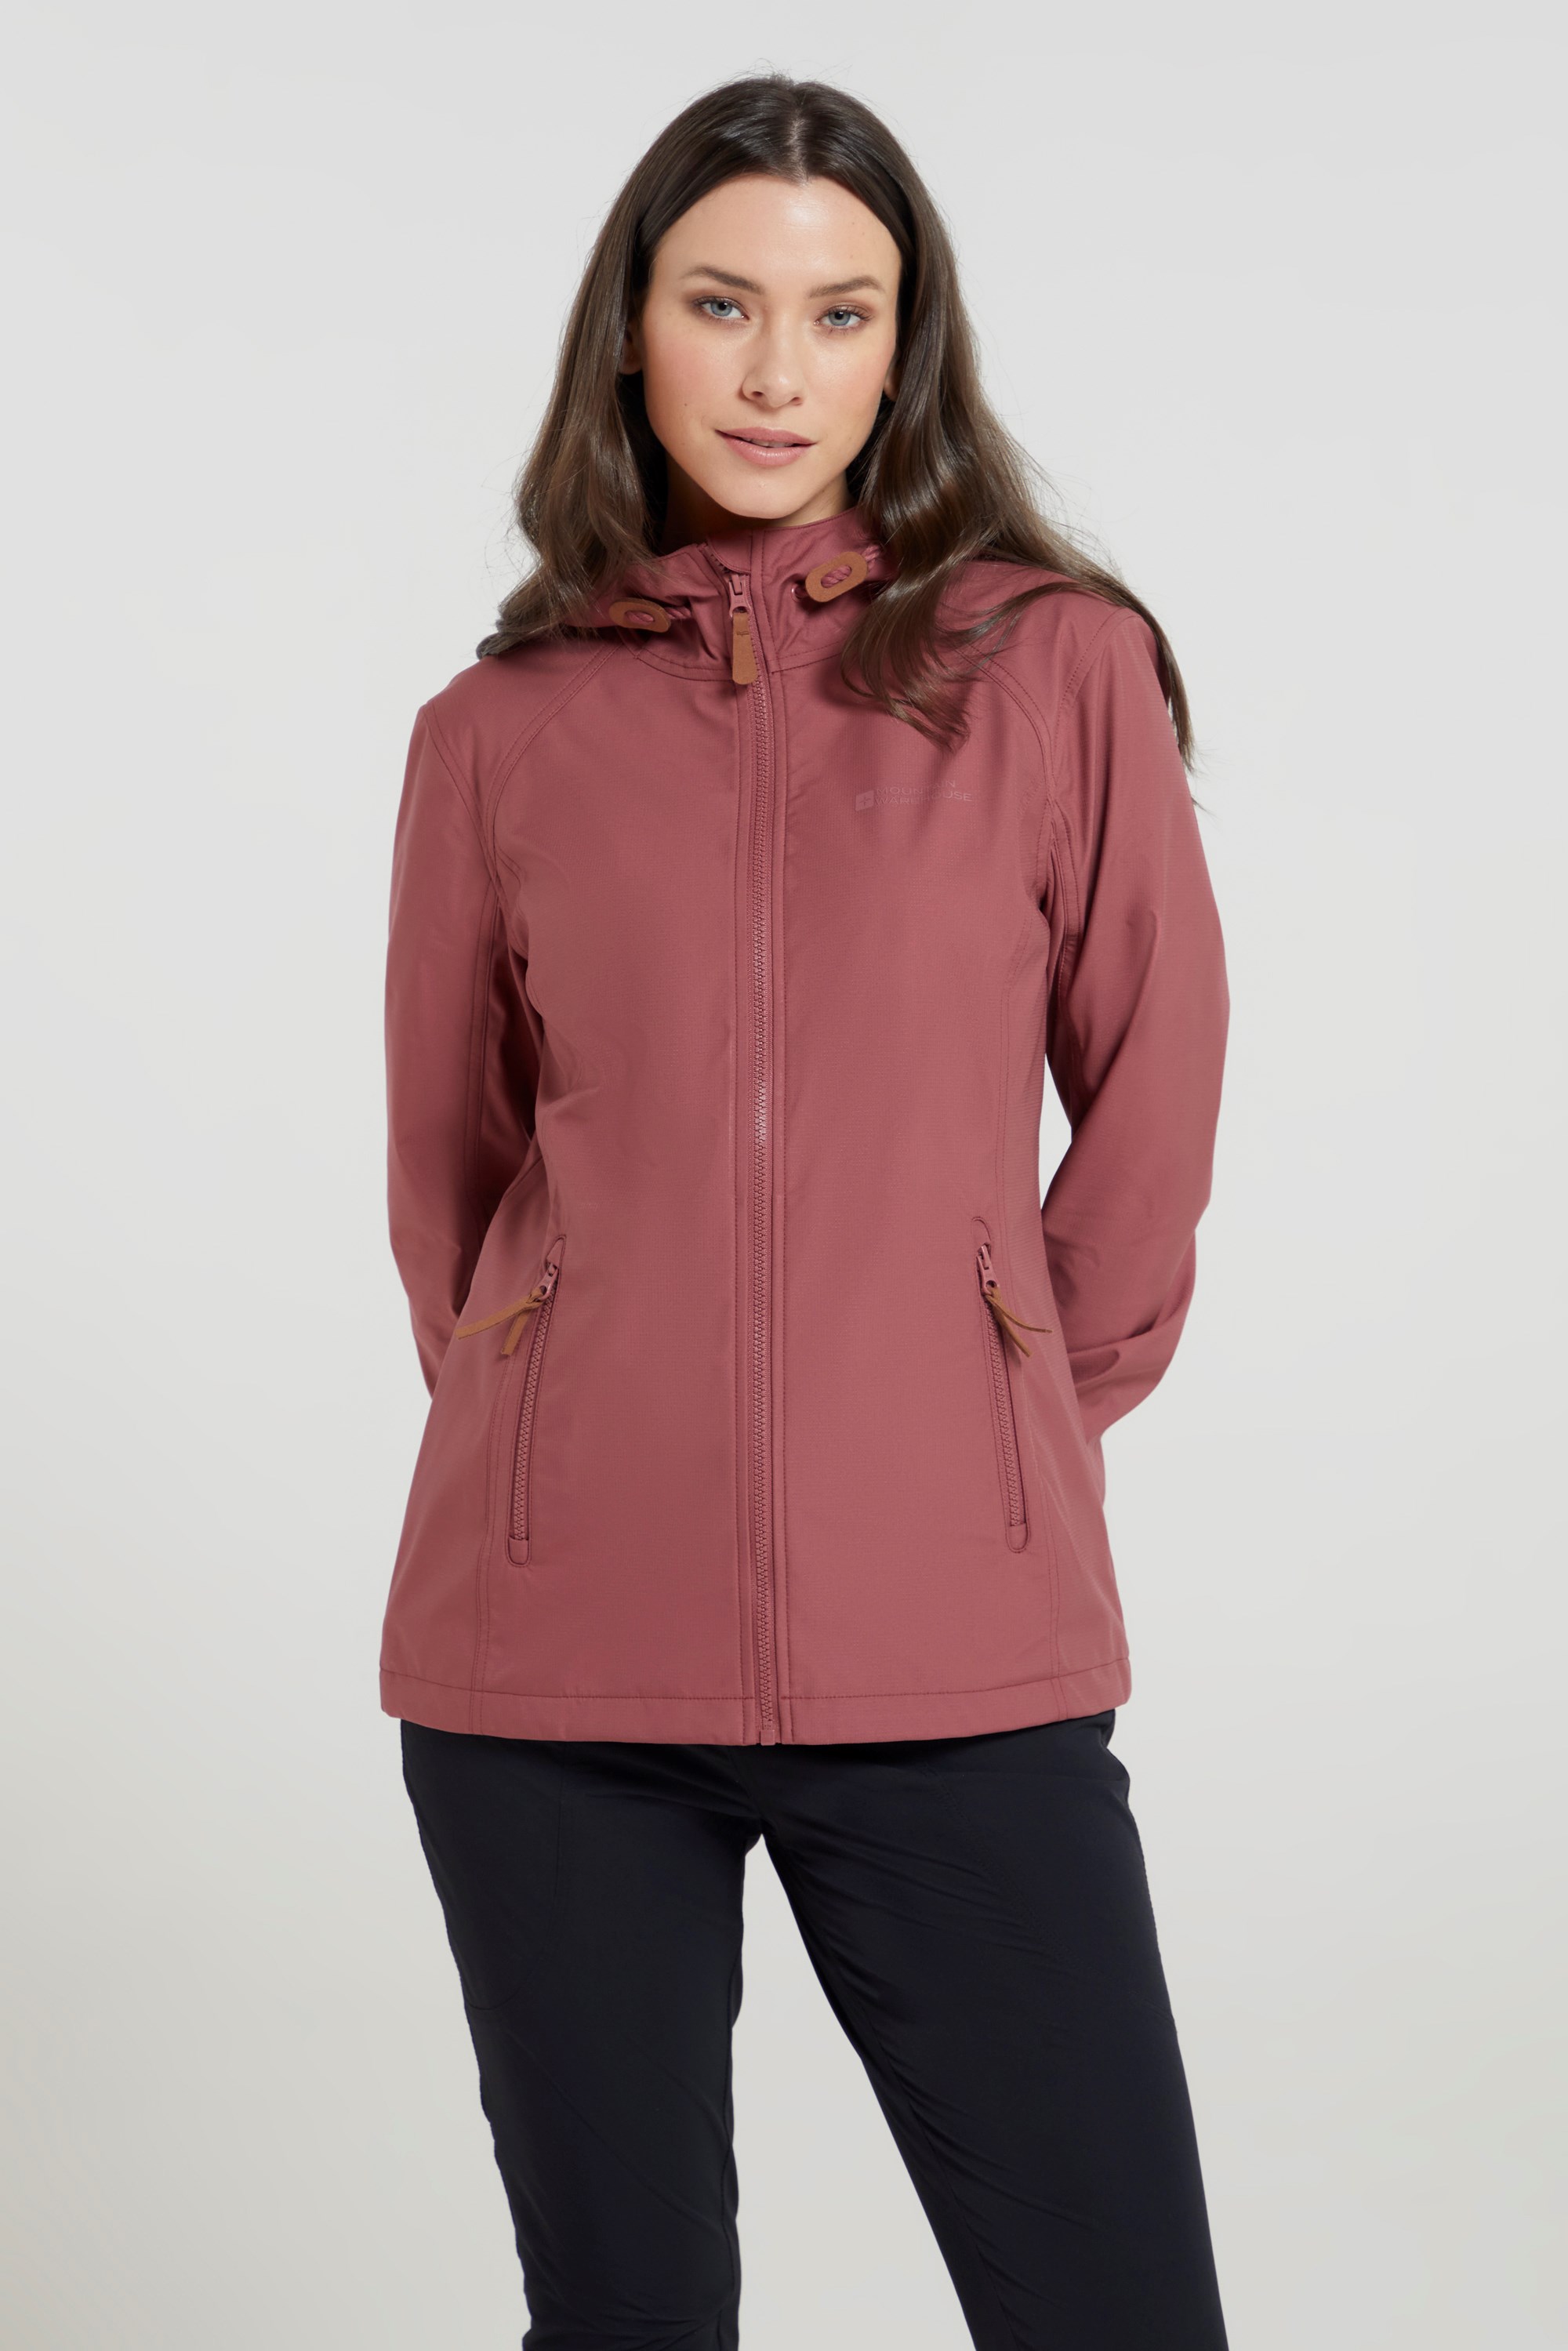 Women's Soft Shell Fleece Jacket